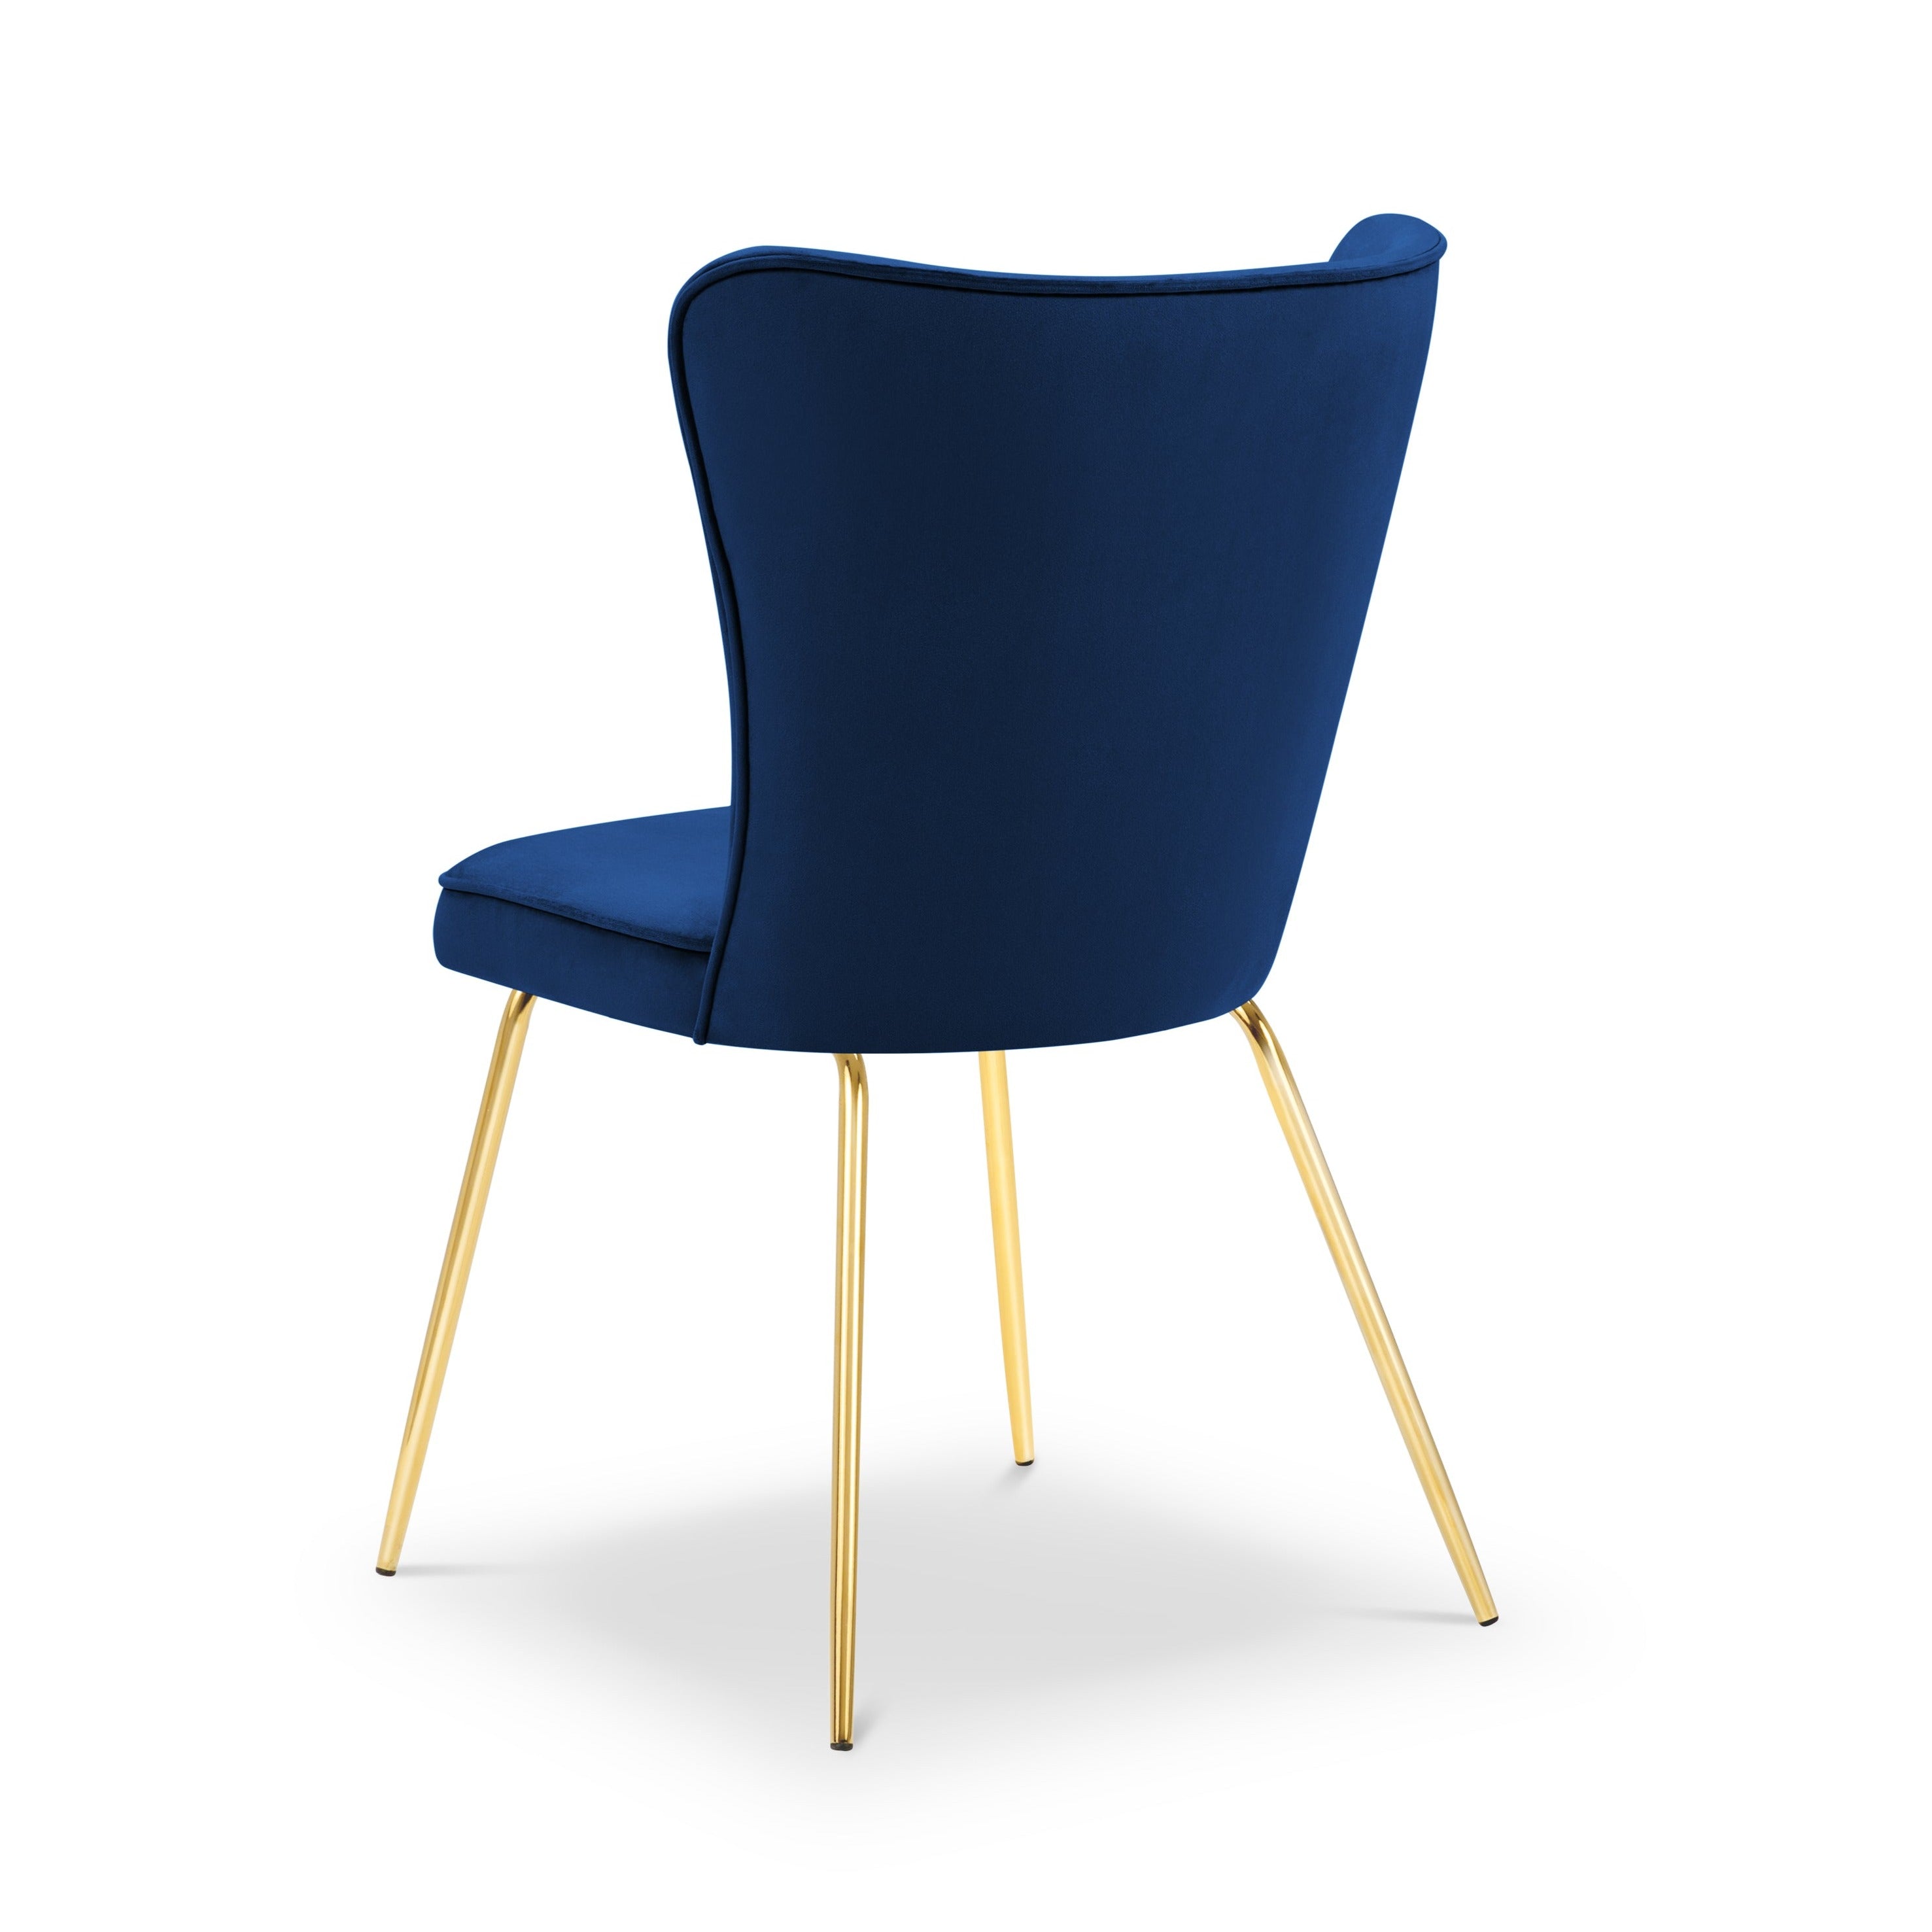 Ari Modern Classic chair